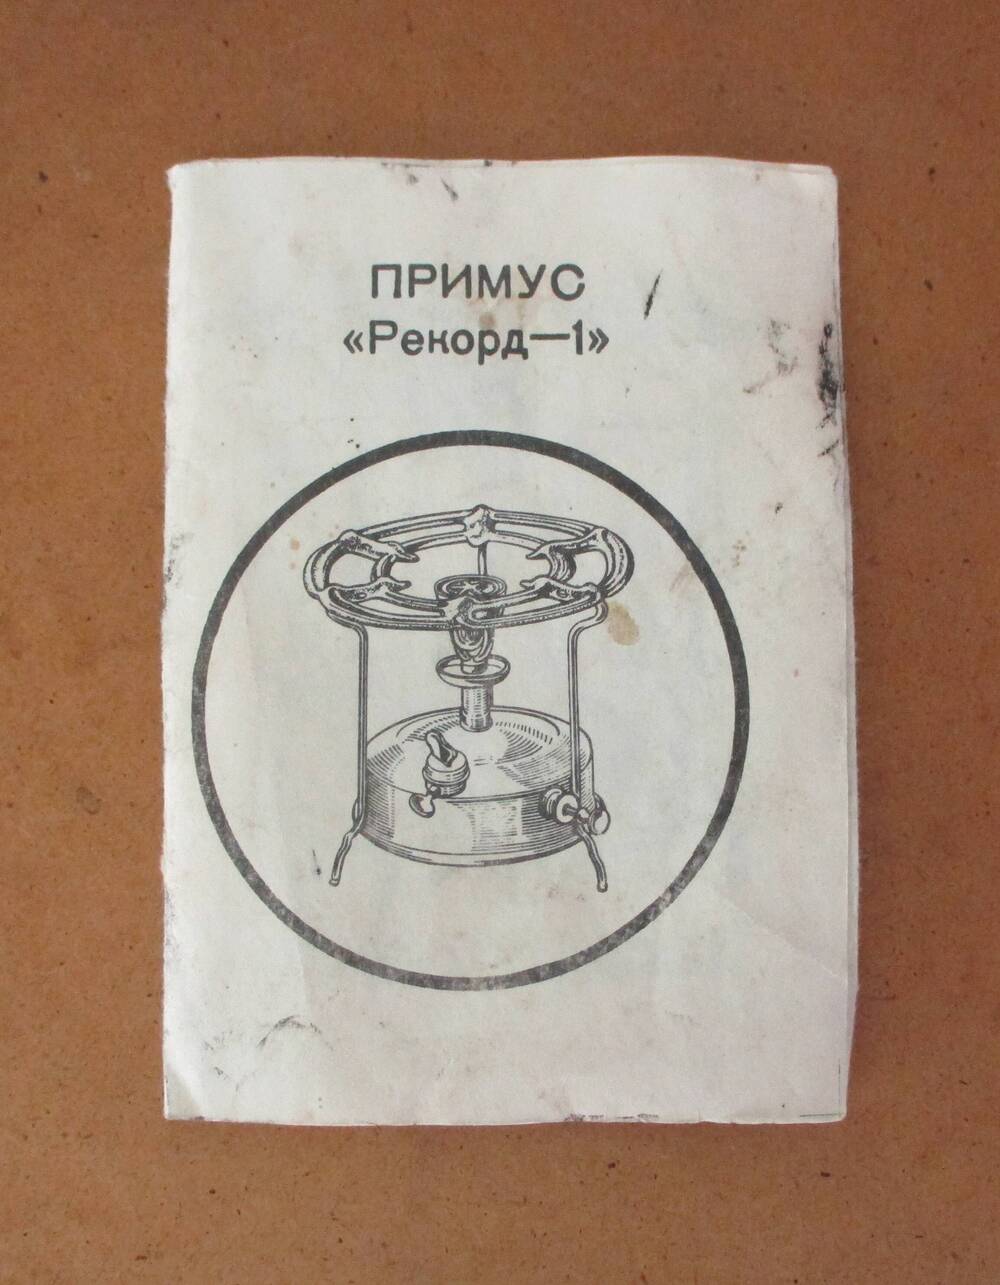 Паспорт на изделие ПРИМУС Рекорд-1.